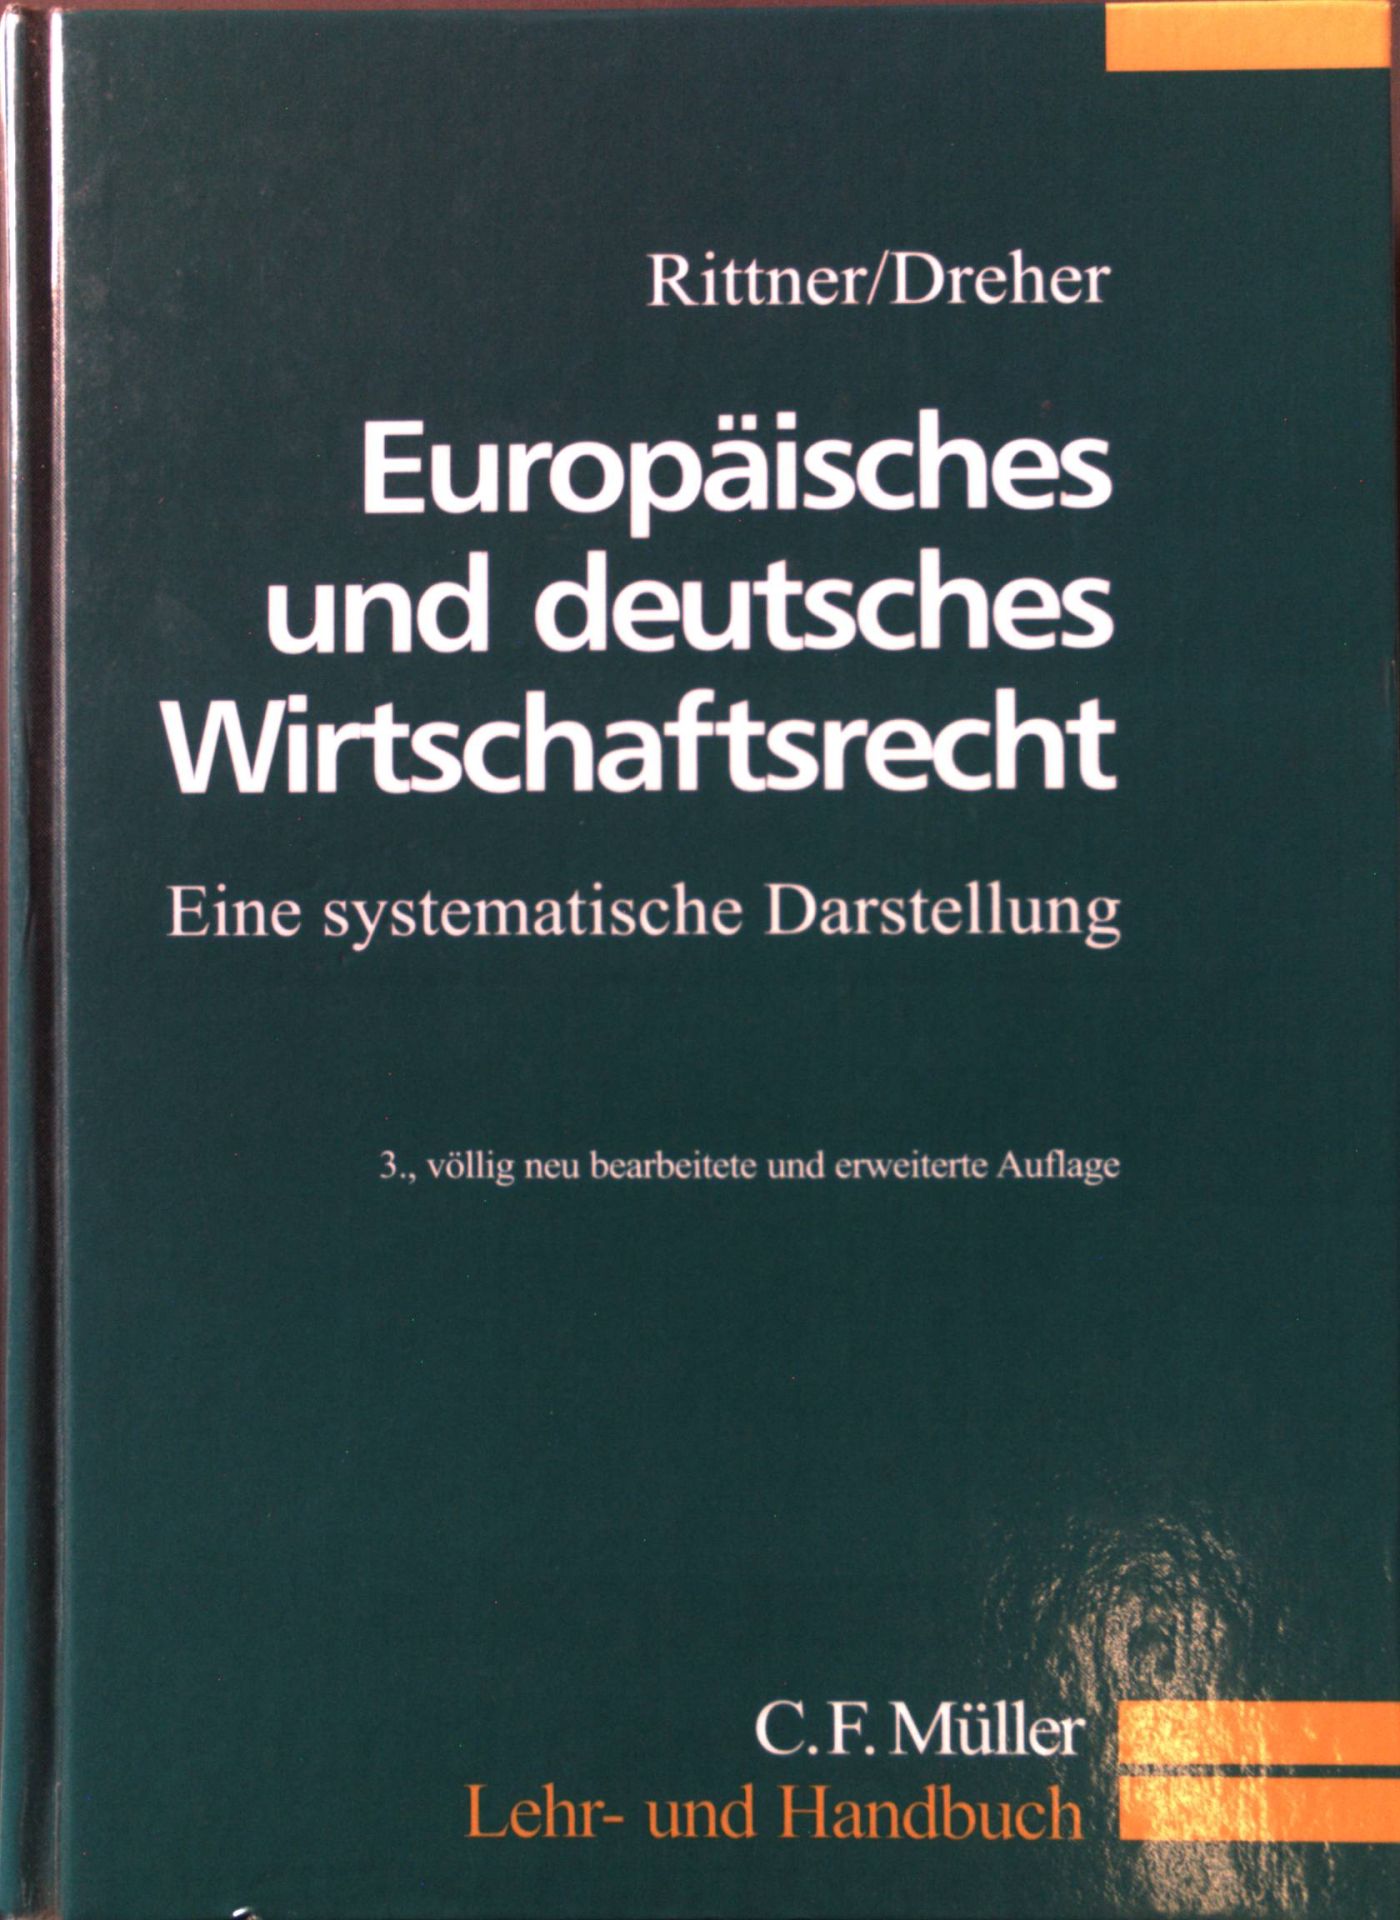 Europäisches und deutsches Wirtschaftsrecht : eine systematische Darstellung. Lehr- und Handbuch - Rittner, Fritz und Meinrad Dreher